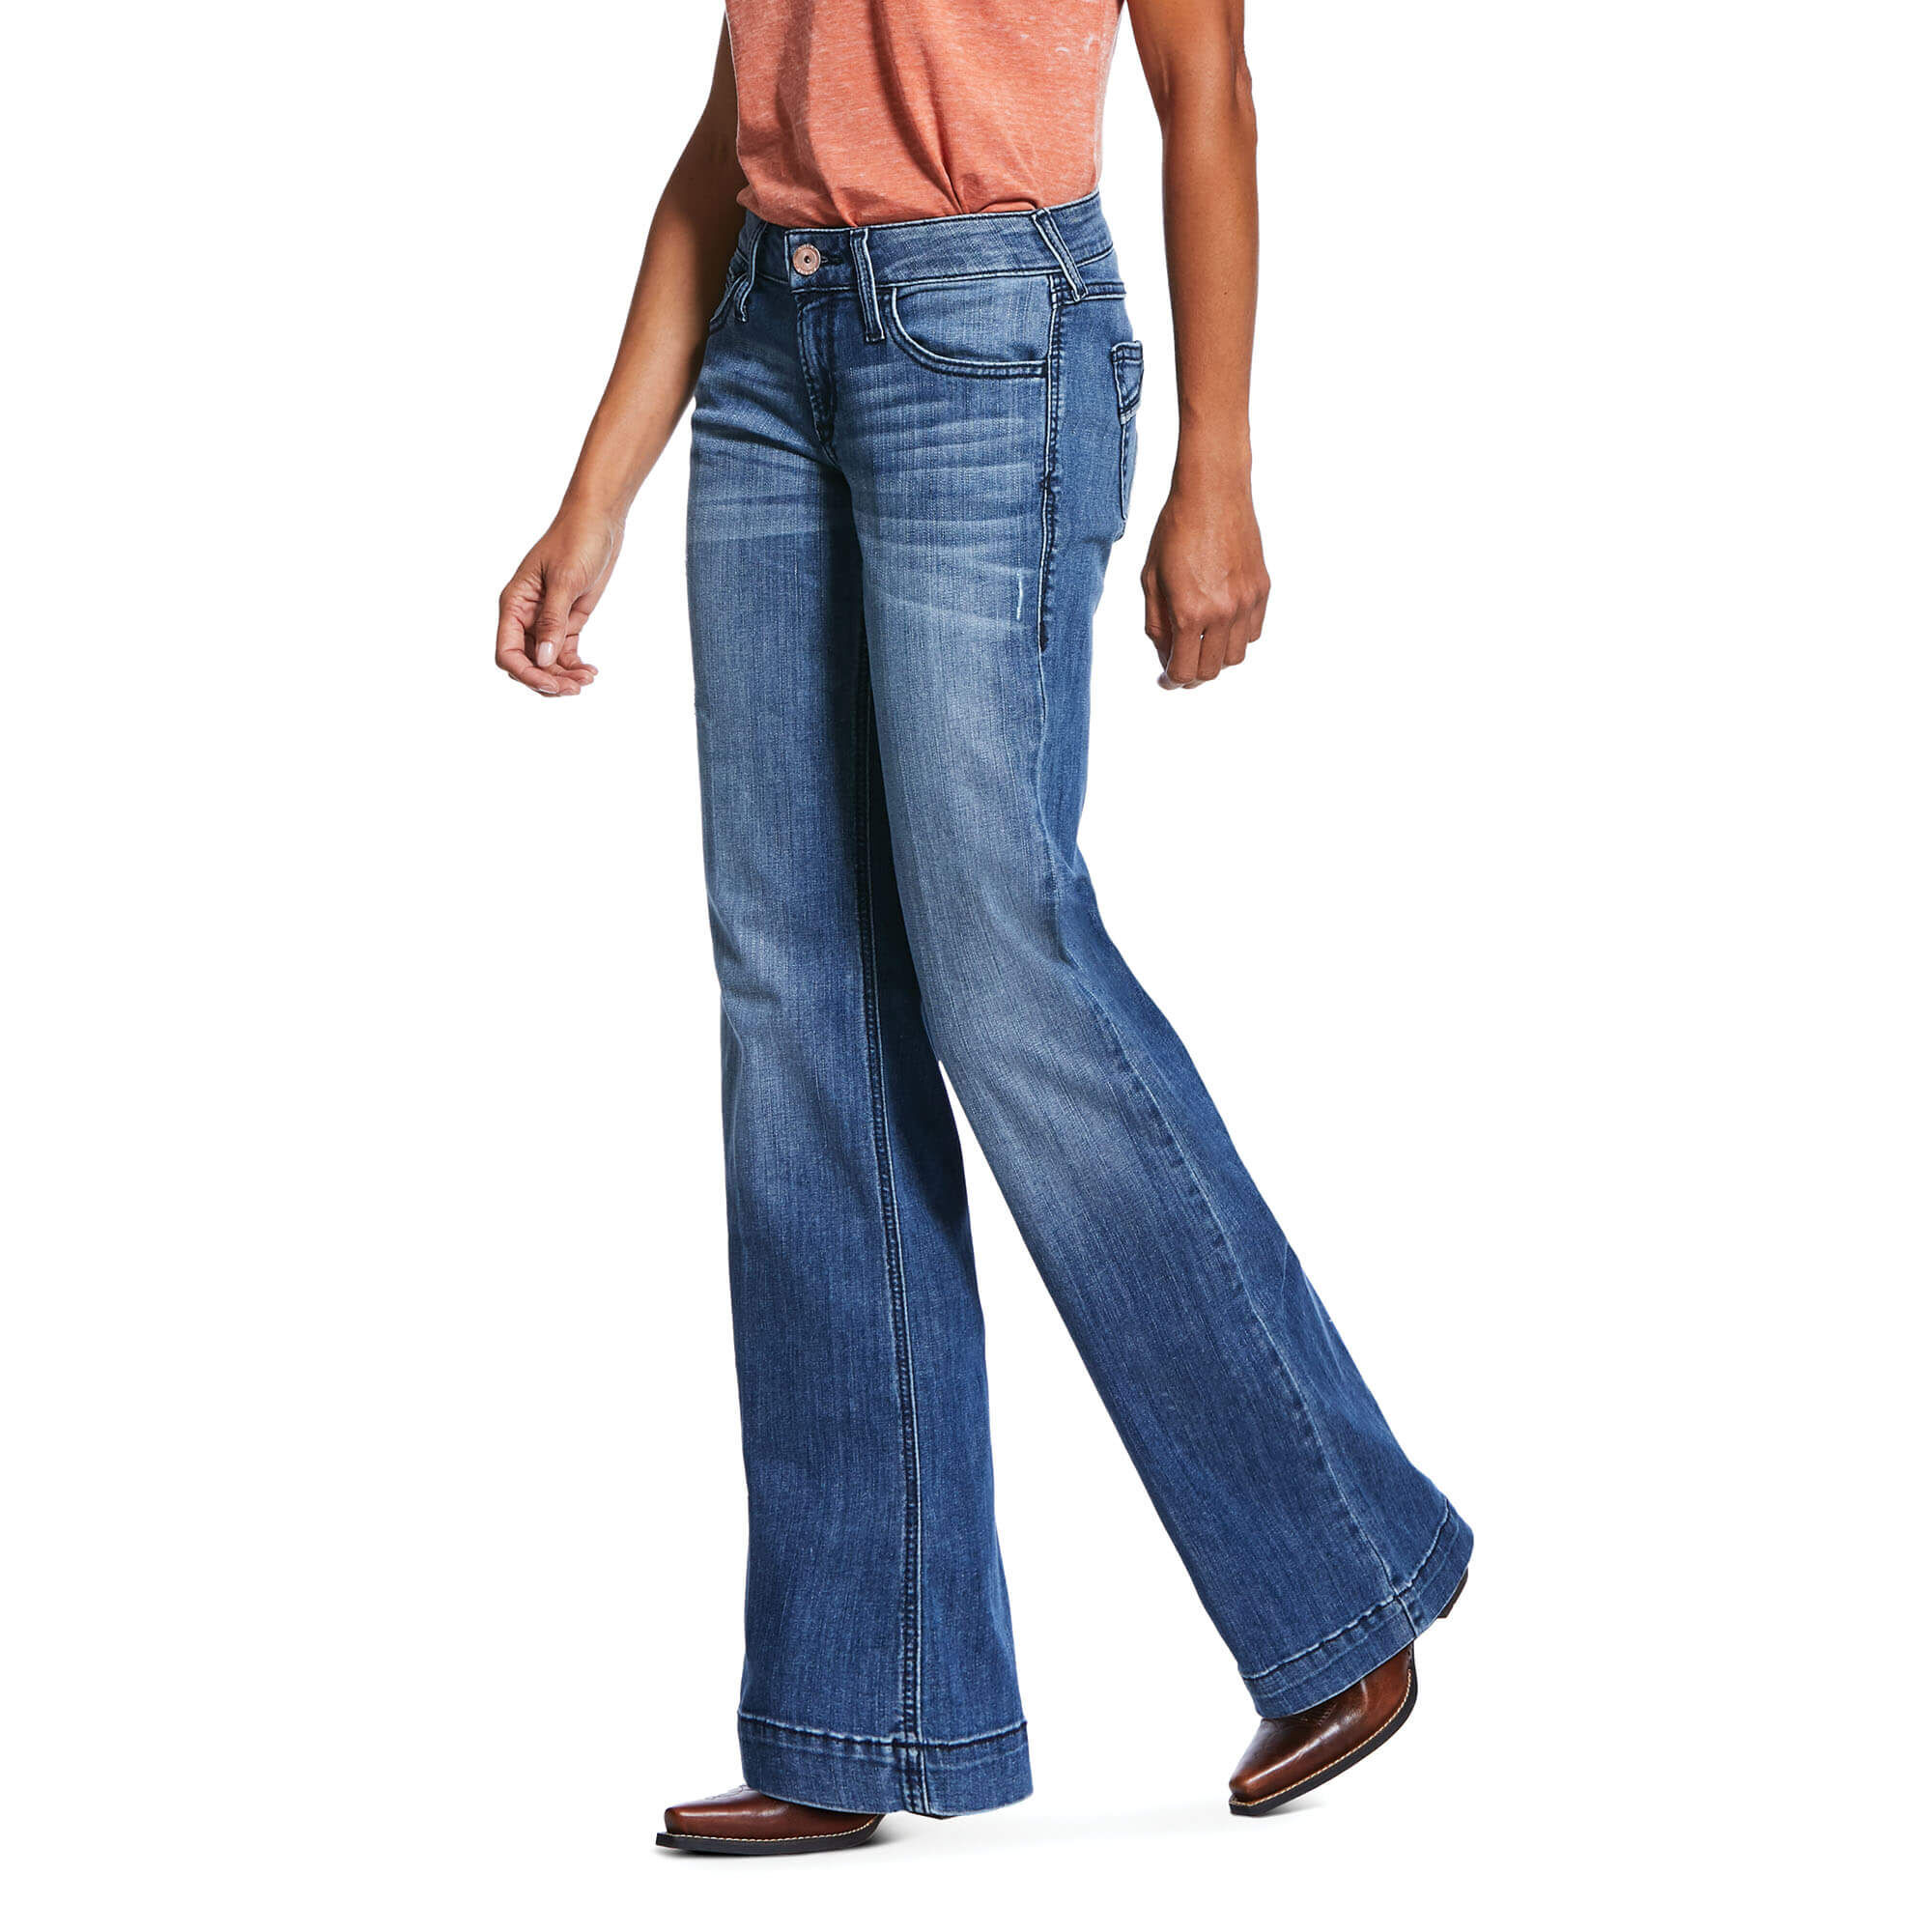 denim trouser jeans